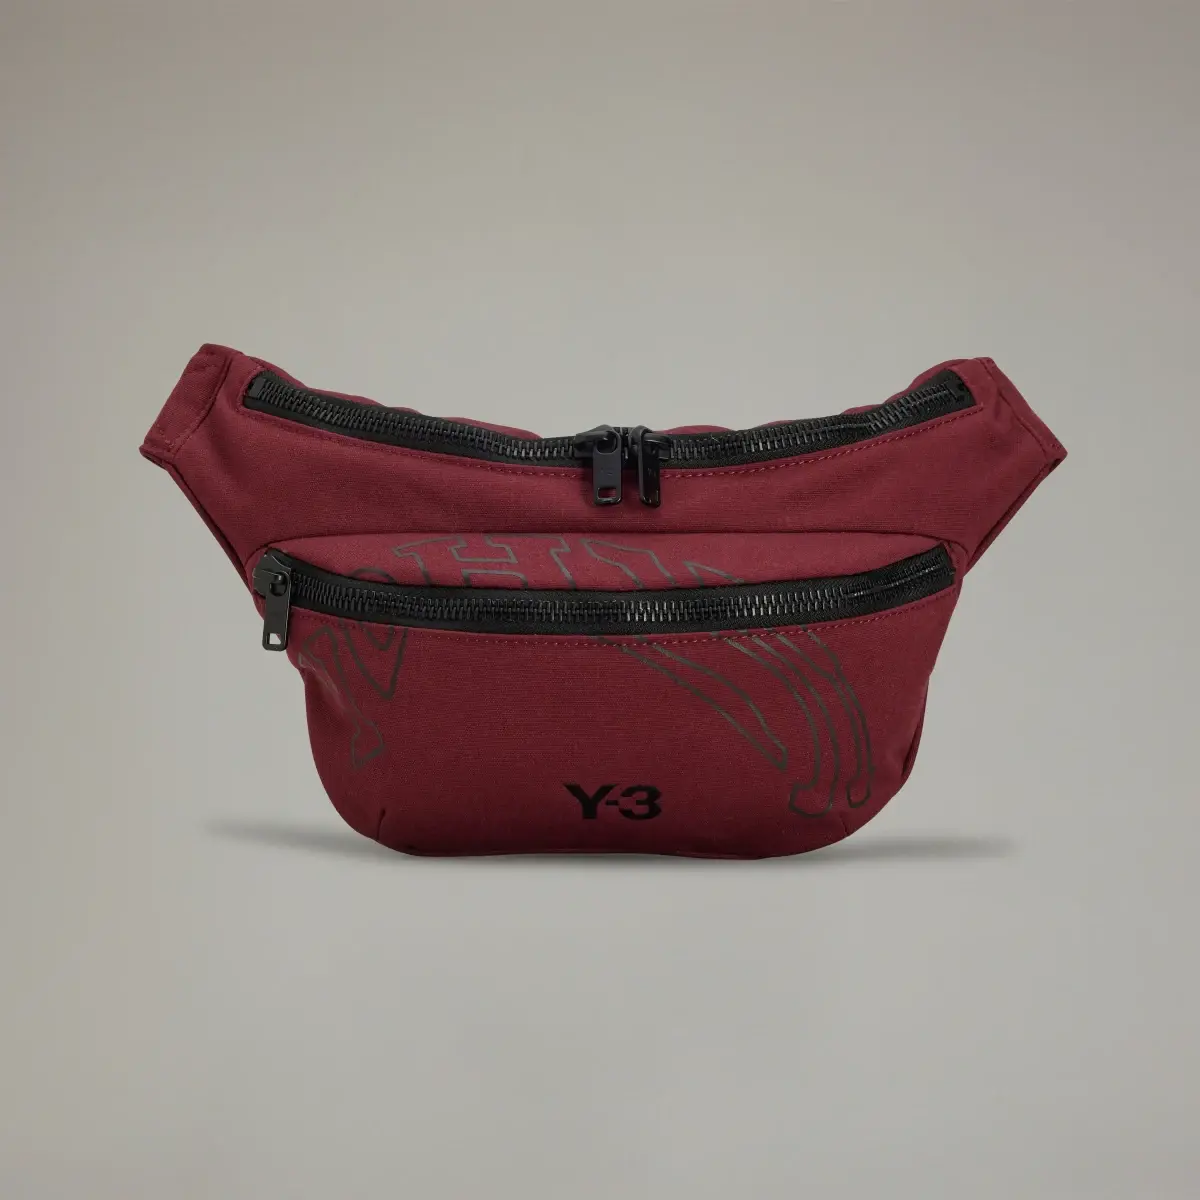 Adidas Y-3 Morphed Crossbody Bag. 2